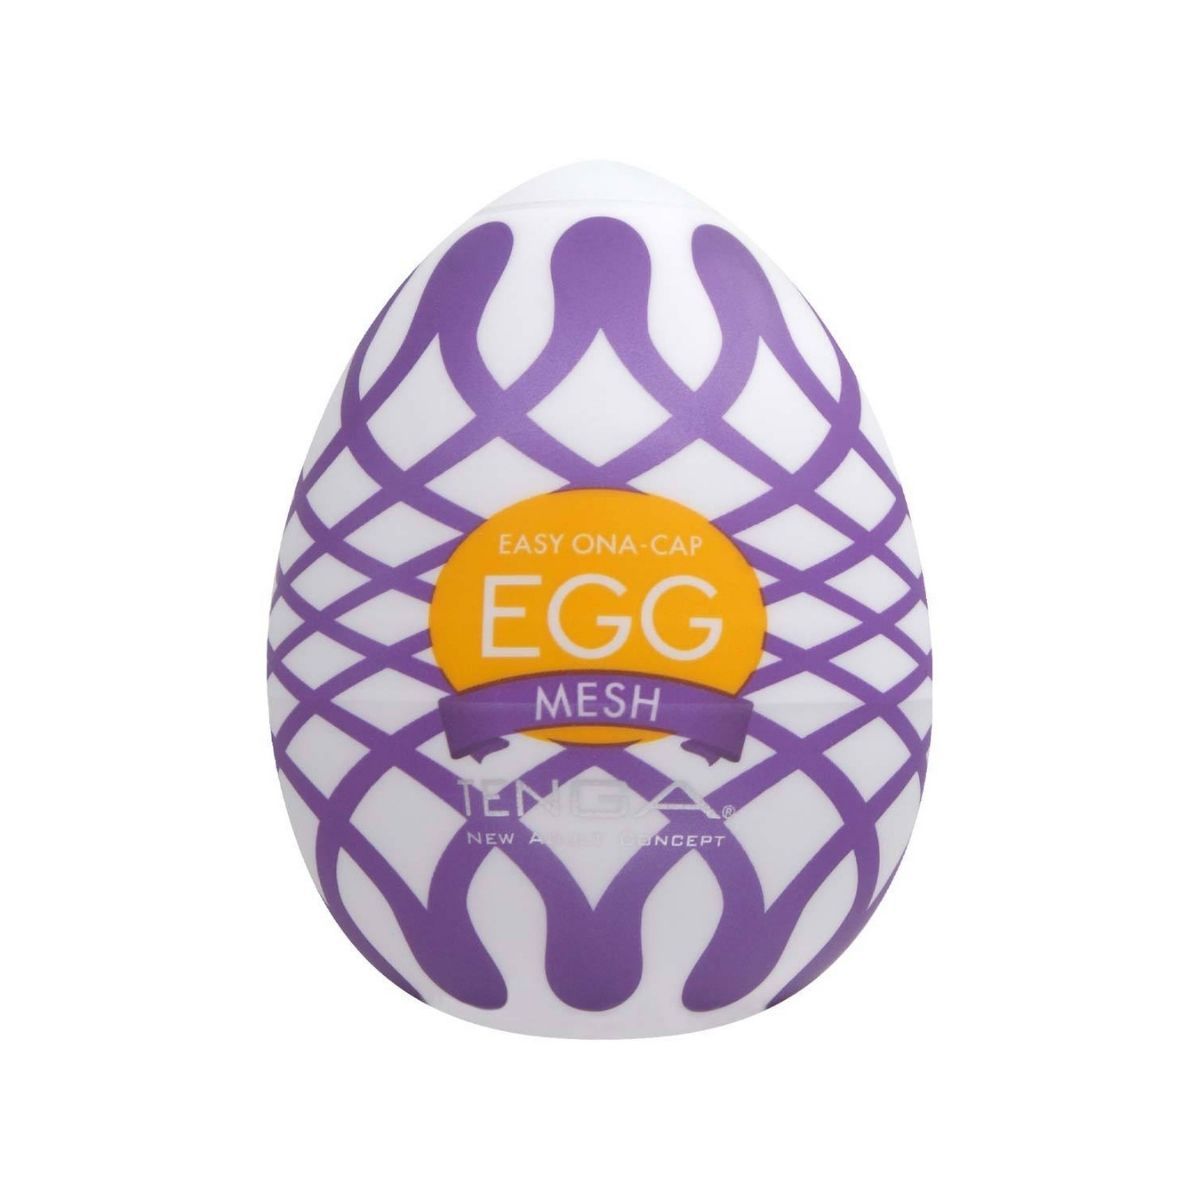 TENGA Egg Mesh 網狀飛機蛋 飛機蛋 購買